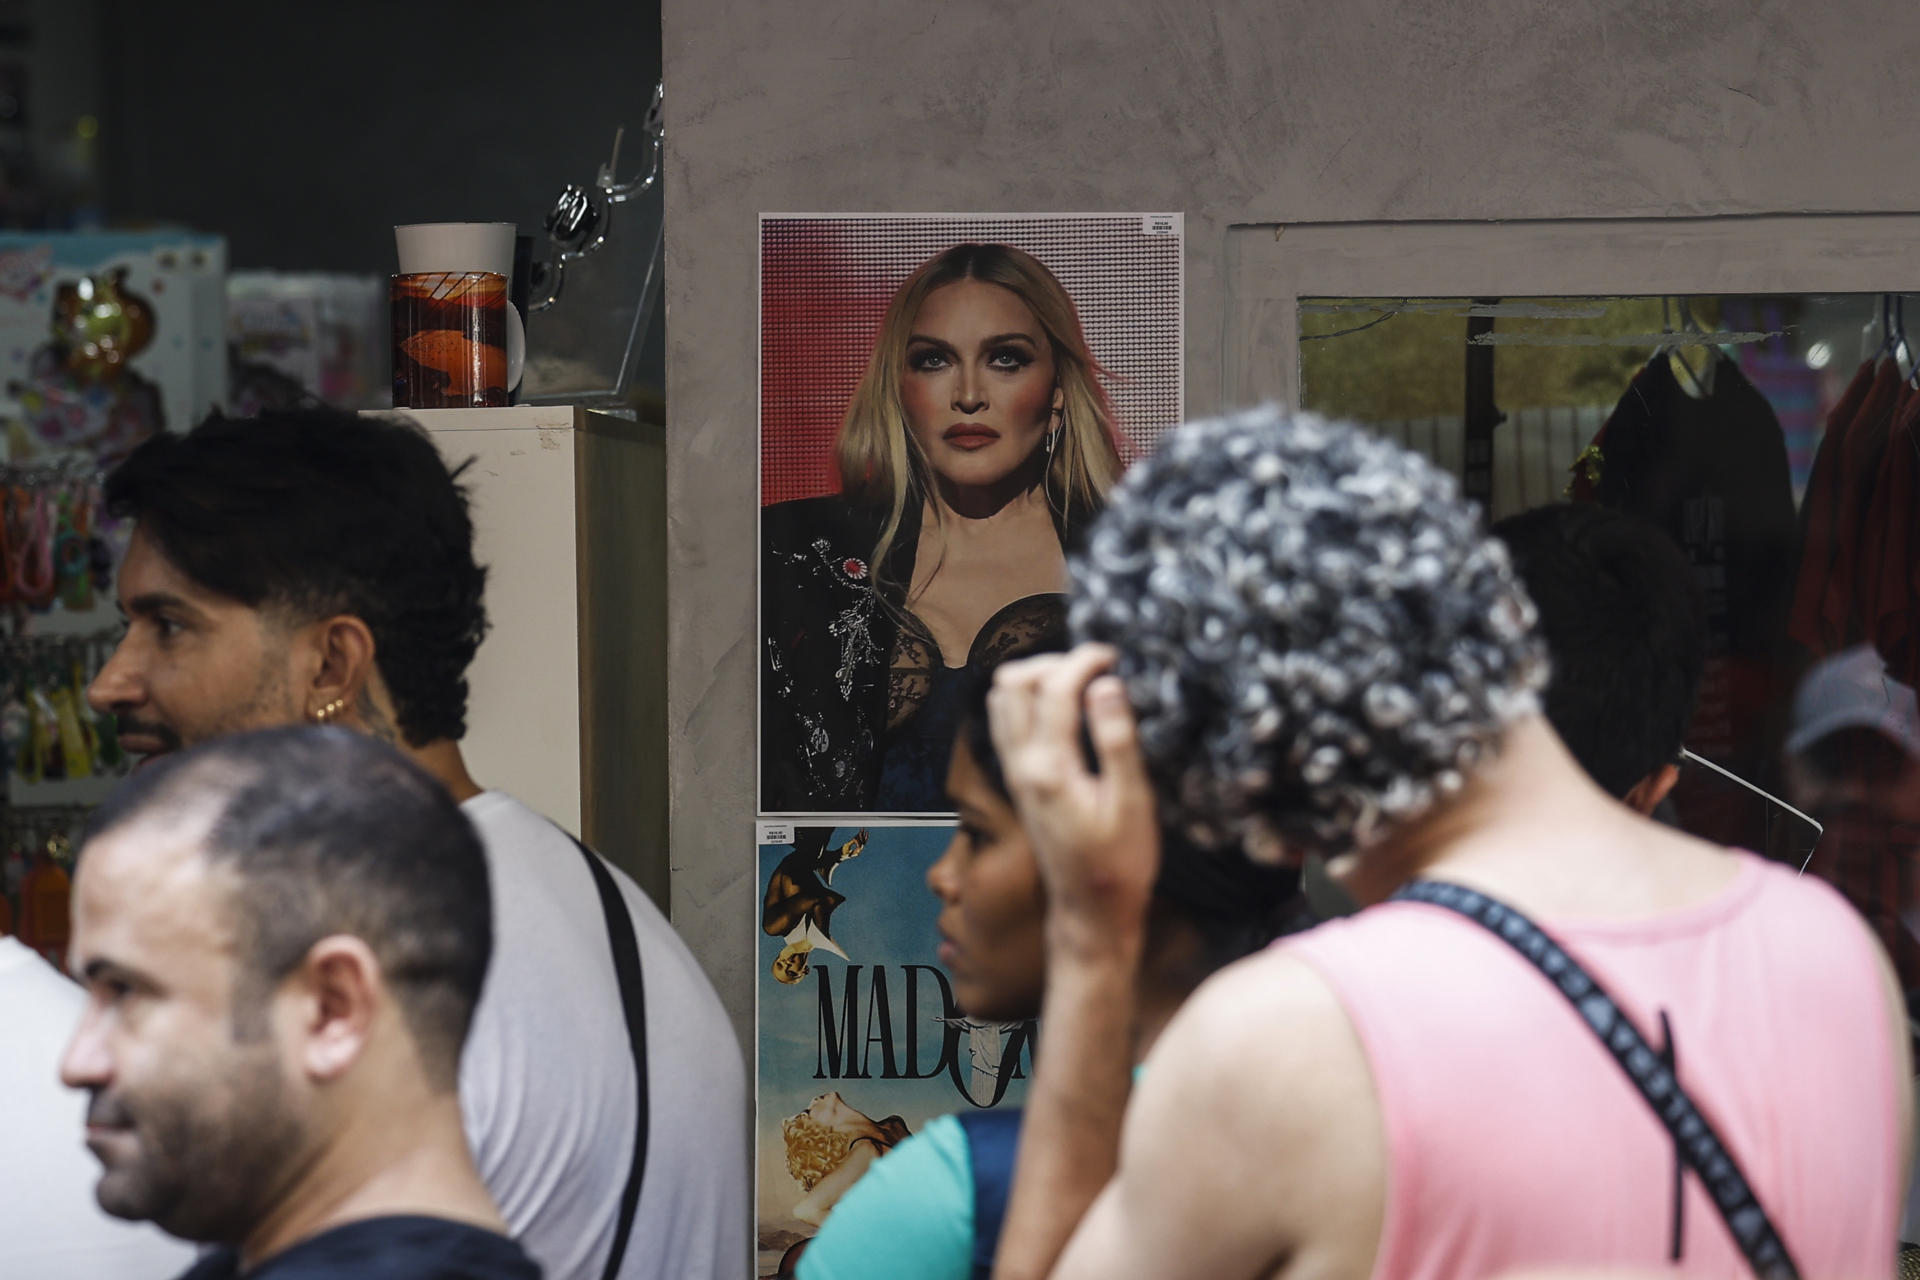 Fotografía que muestra mercancía en venta alusiva a la artista estadounidense Madonna en Río de Janeiro (Brasil). Se espera que el show reúna a 1,5 millones de personas, siendo el mayor concierto en sus 40 años de carrera. EFE/ Antonio Lacerda
